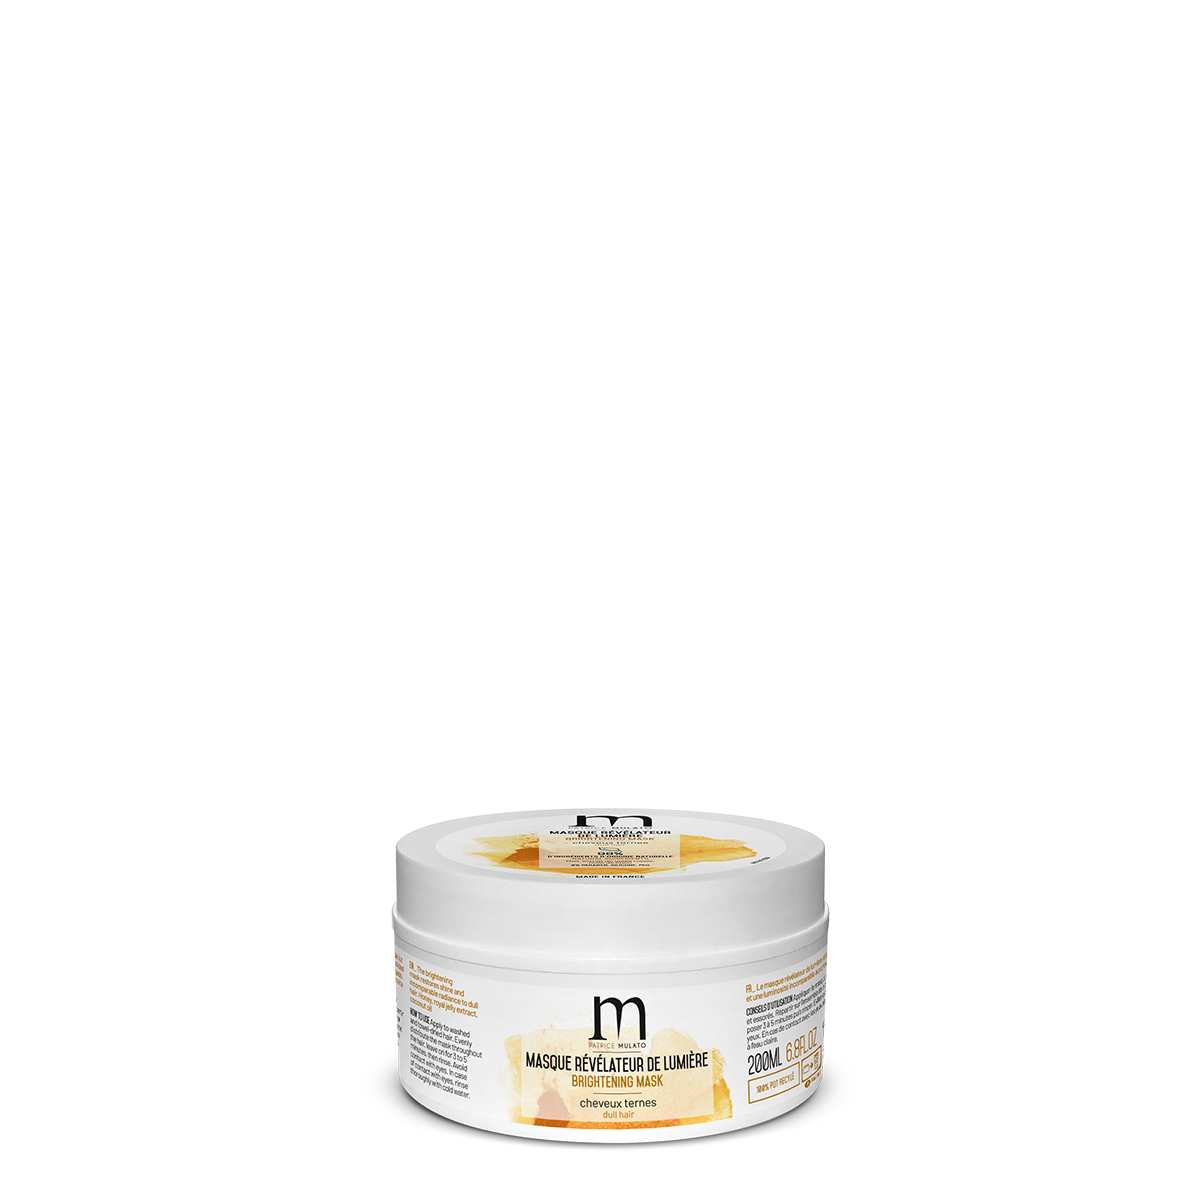 Mulato- Masque Révélateur de Lumière - 200 ml - Gelée Royale pour illuminer vos cheveux ternes